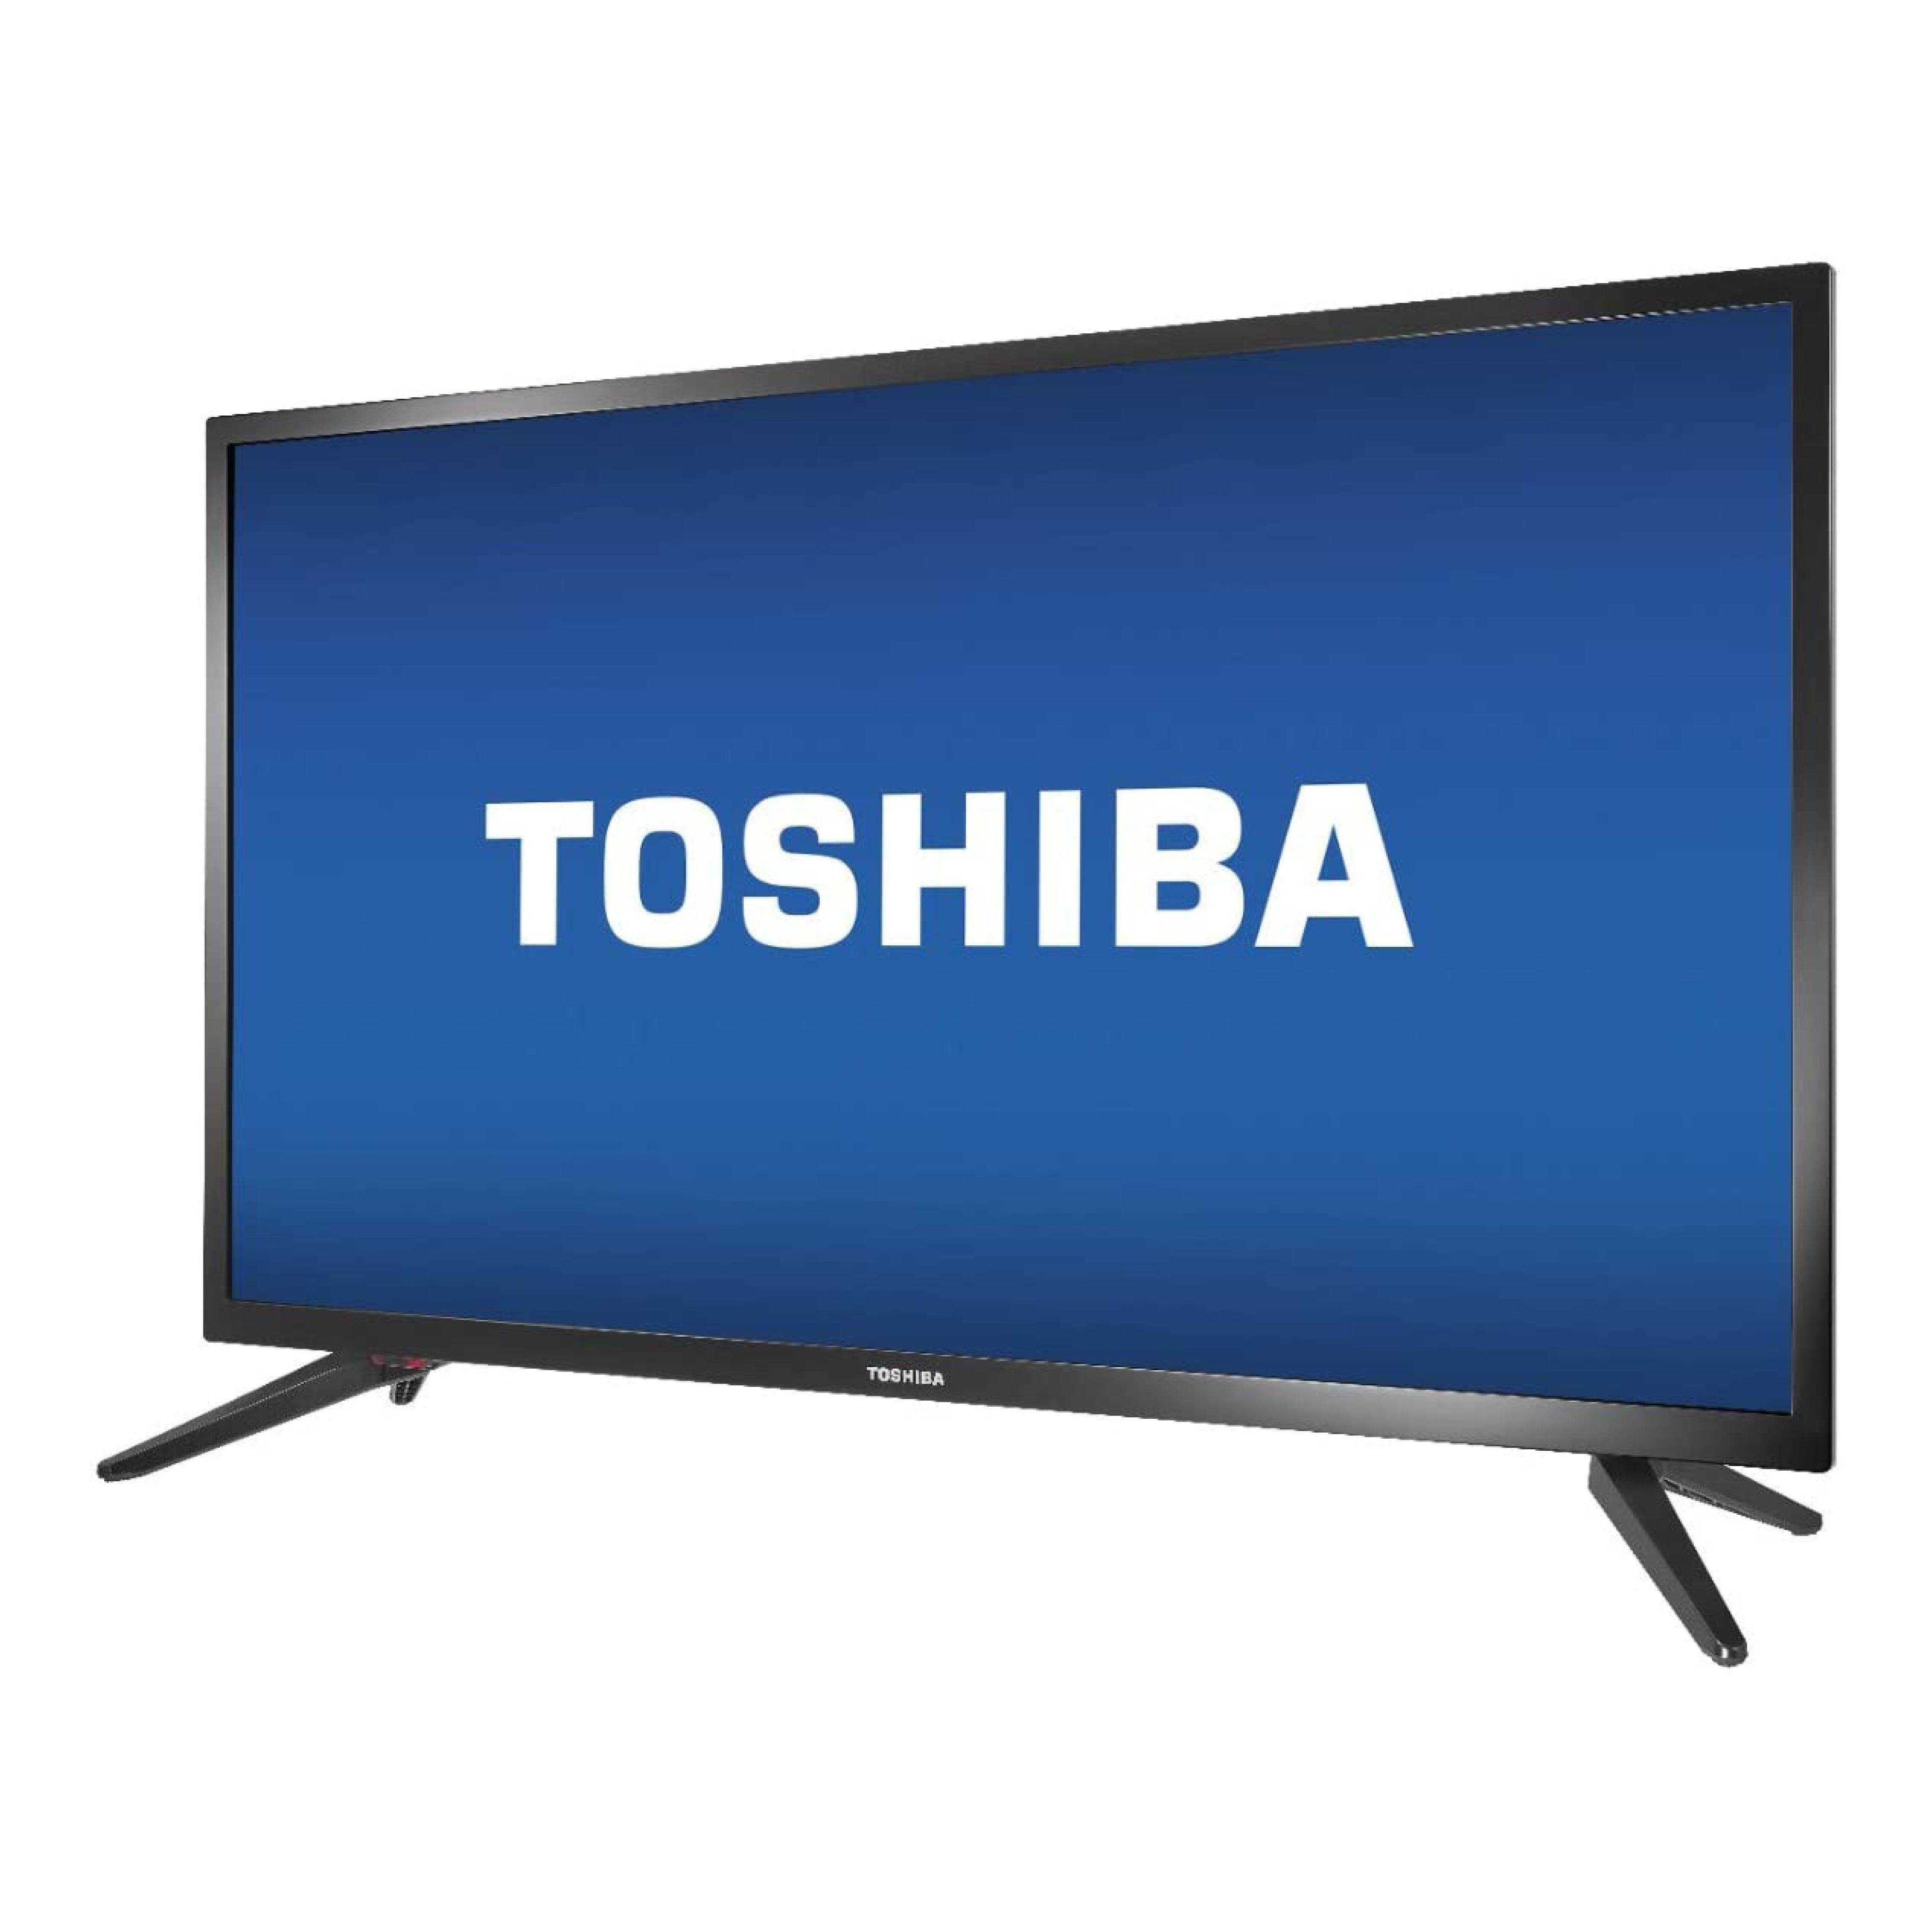 Toshiba 43LF421U21 Fire TV